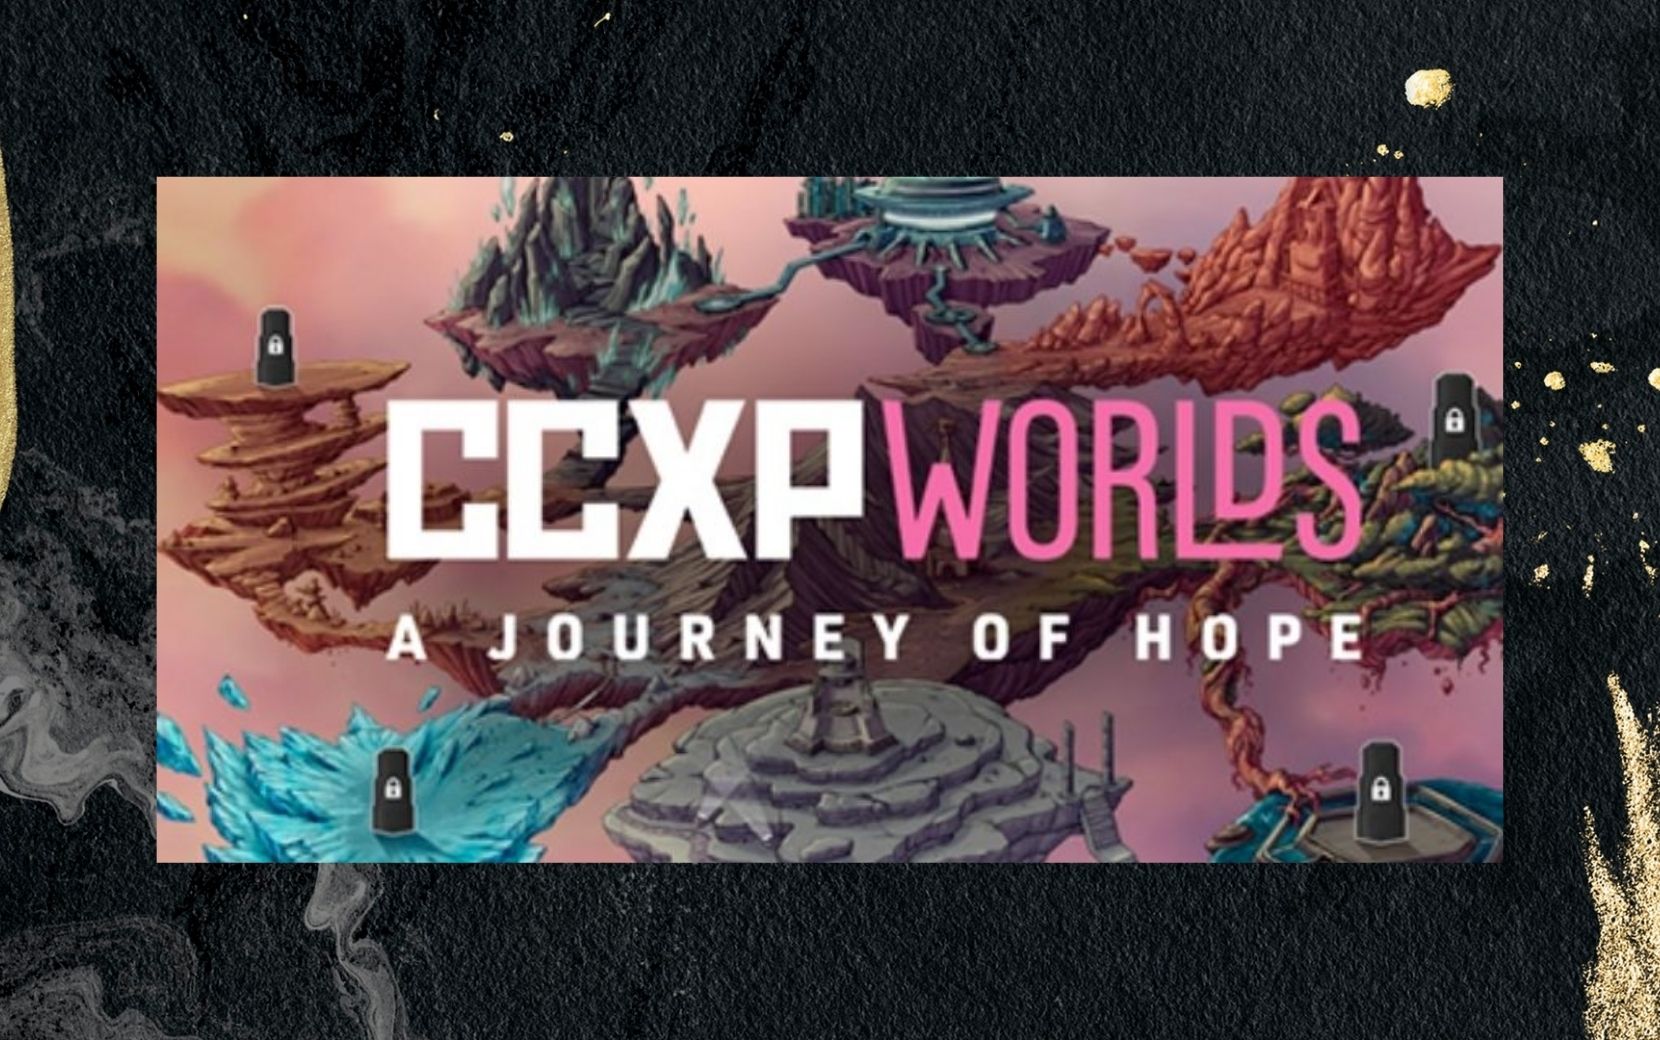 CCXP Worlds 2020 divulga programação - confira!